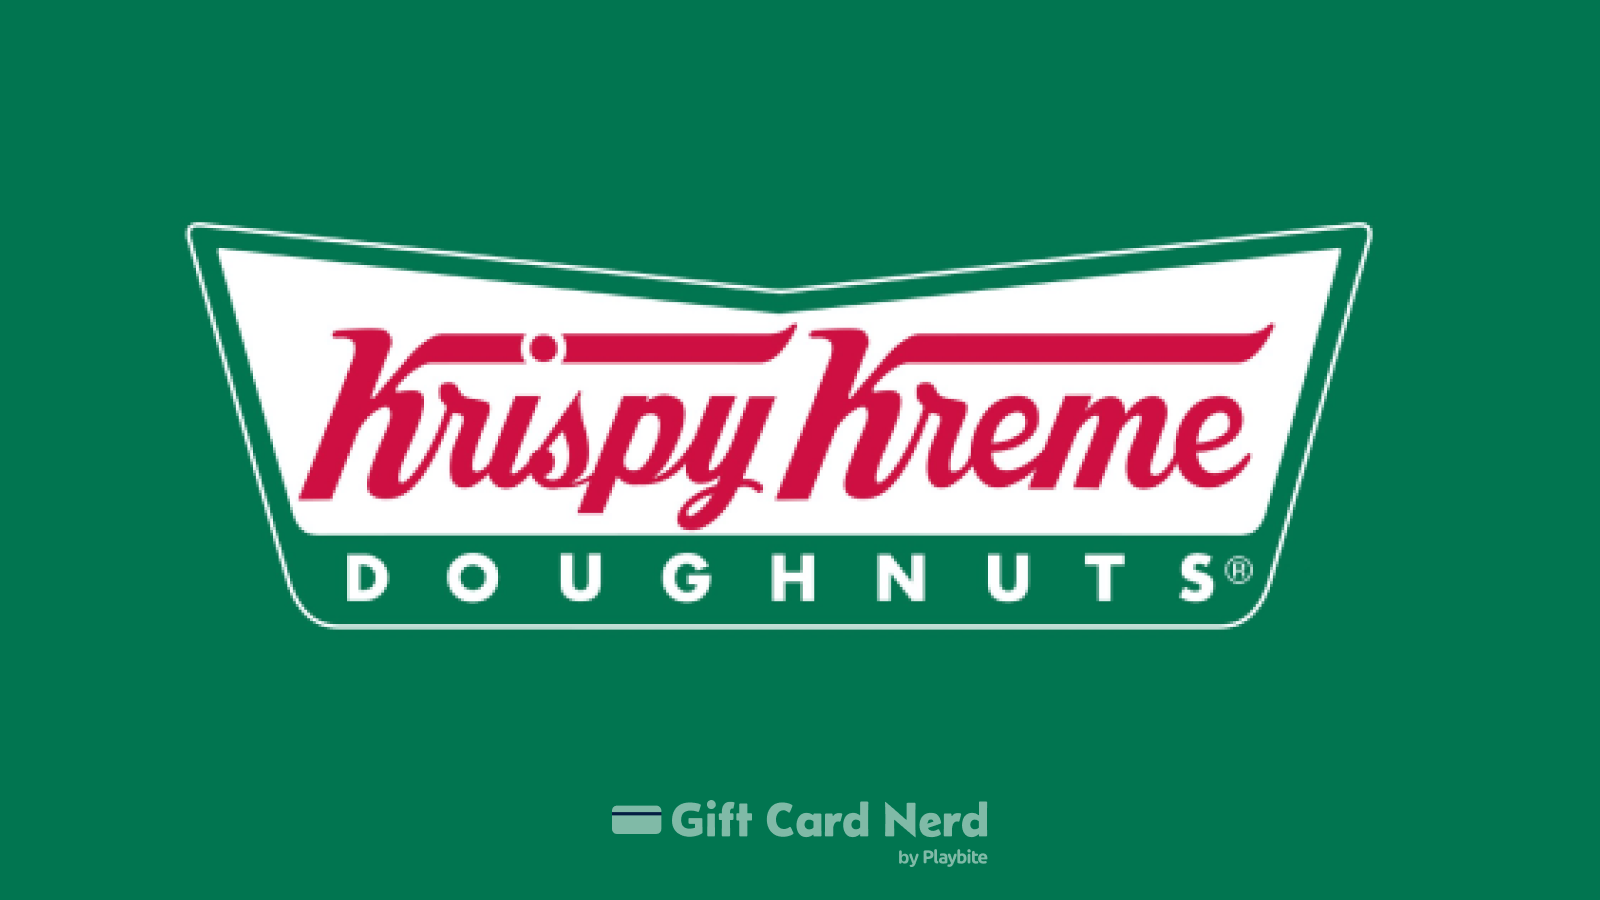 Can I Use a Krispy Kreme Gift Card on Steam?